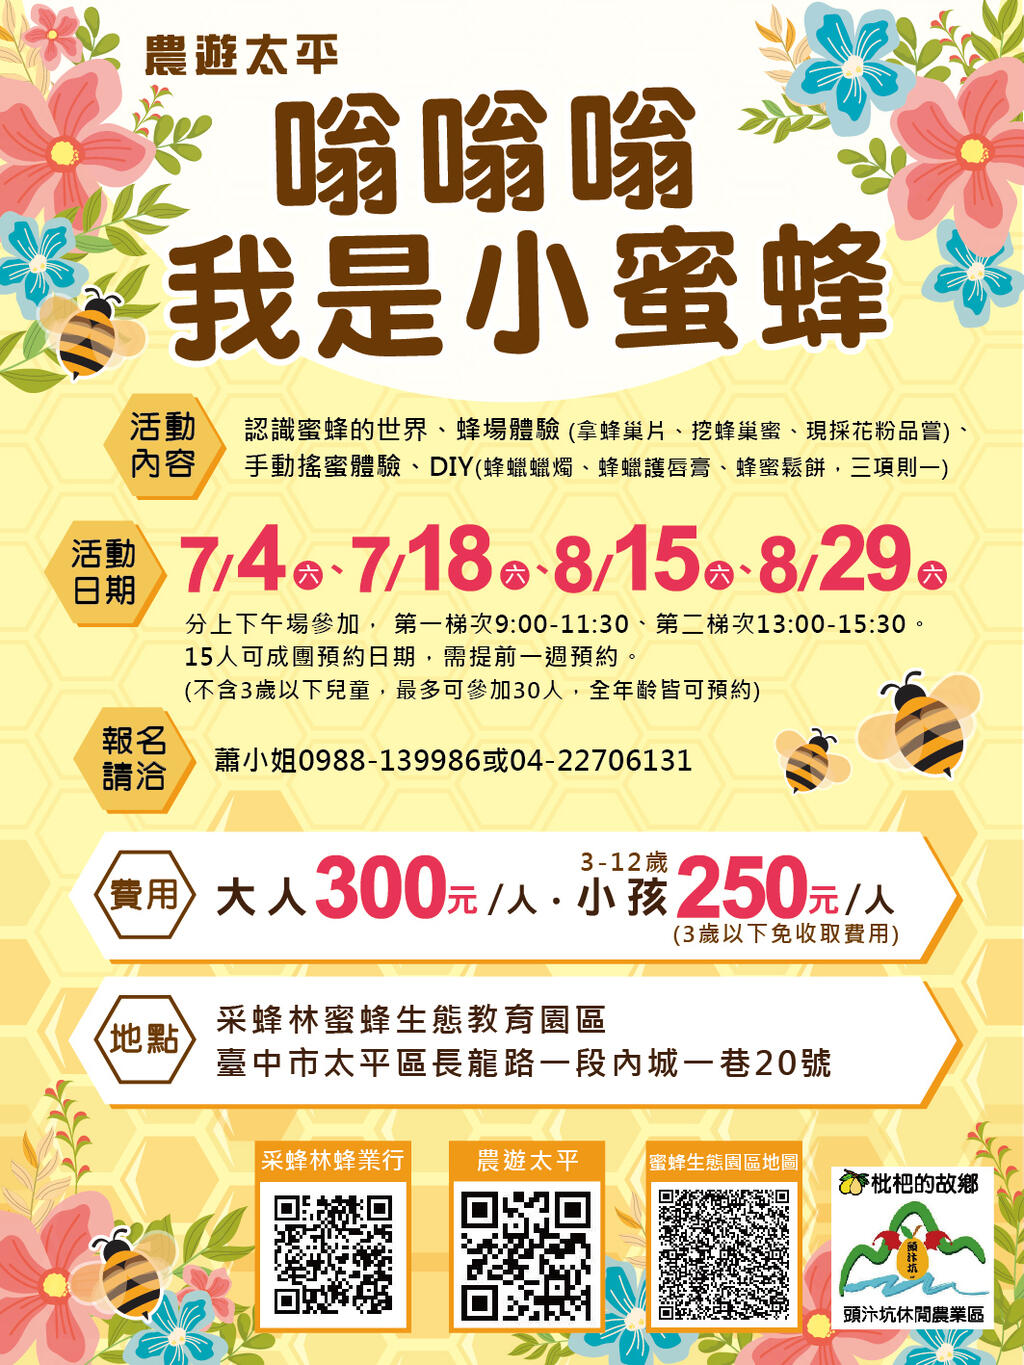 太平区农会於7月18日-8月15-29日推出-农游太平-嗡嗡嗡-我是小蜜蜂-蜂场体验活动